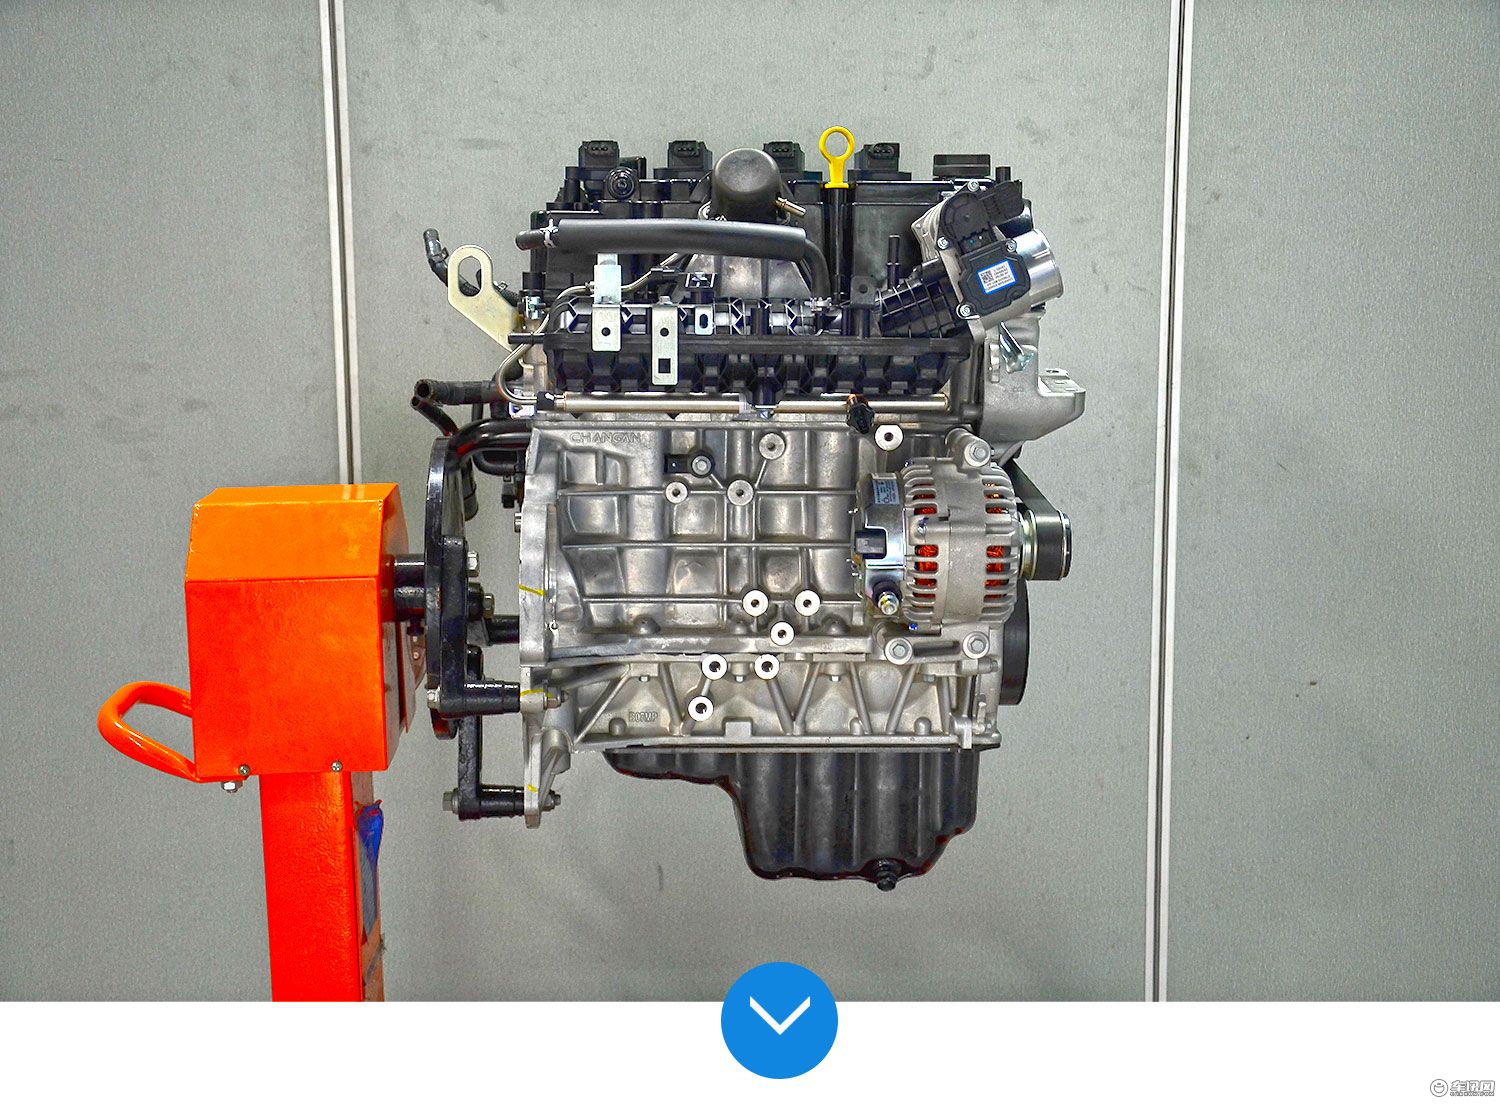 拆解新款长安cs75发动机 看动力,油耗表现以及都有哪些技术含量